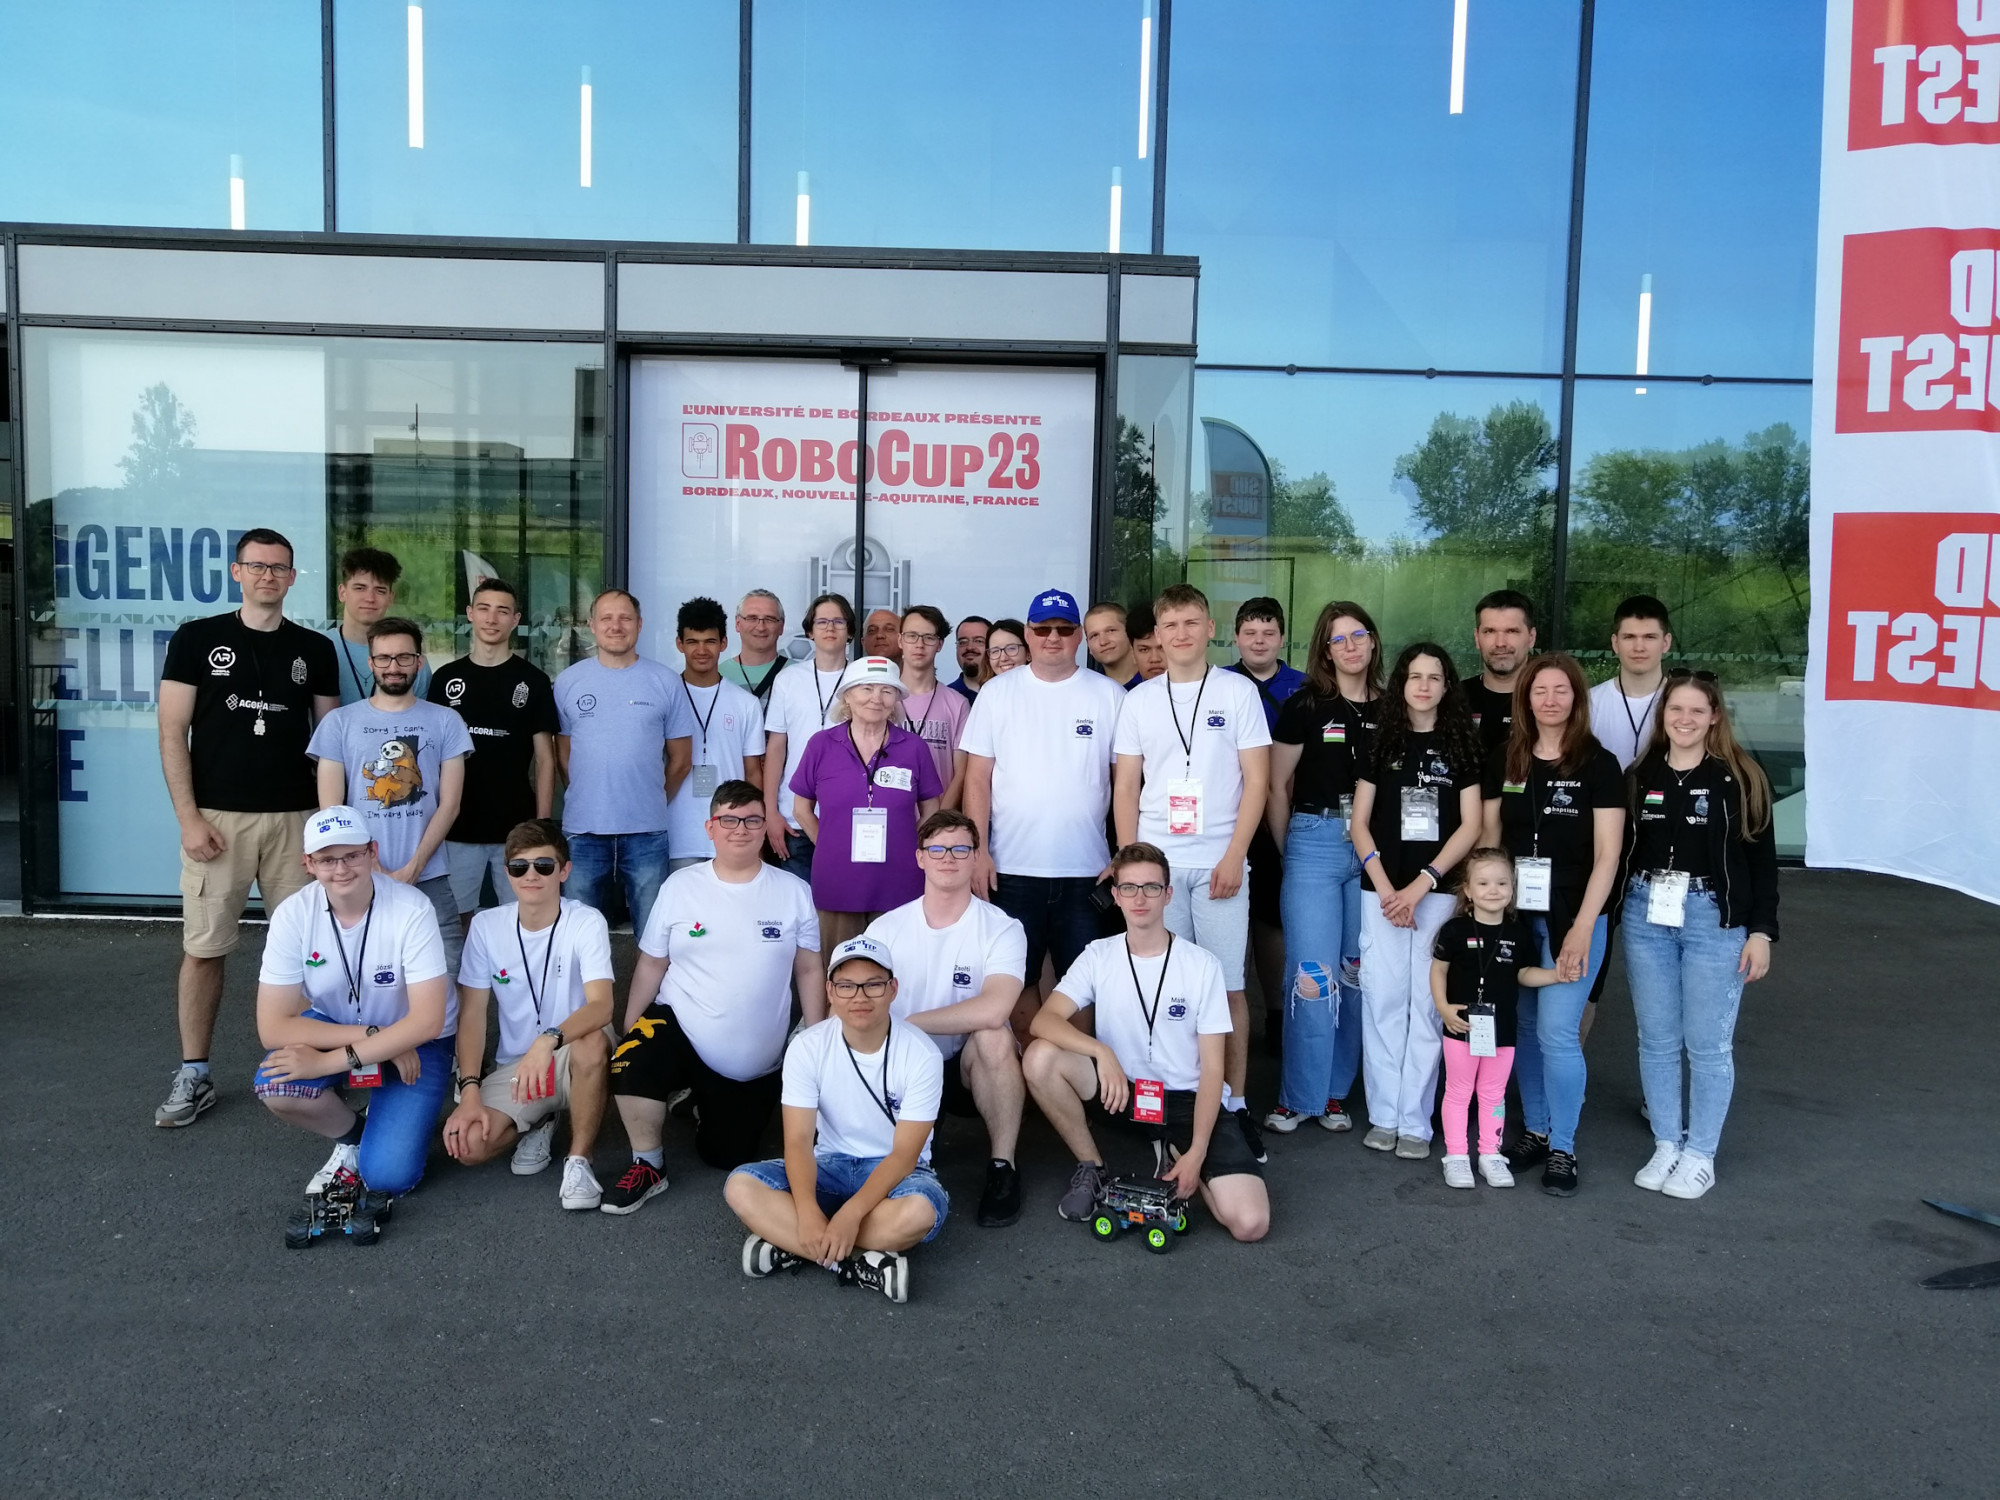 Az Európa-bajnokság után a bordeaux-i világversenyen is kiváló eredményeket értek el a fiatal magyar robotprogramozók